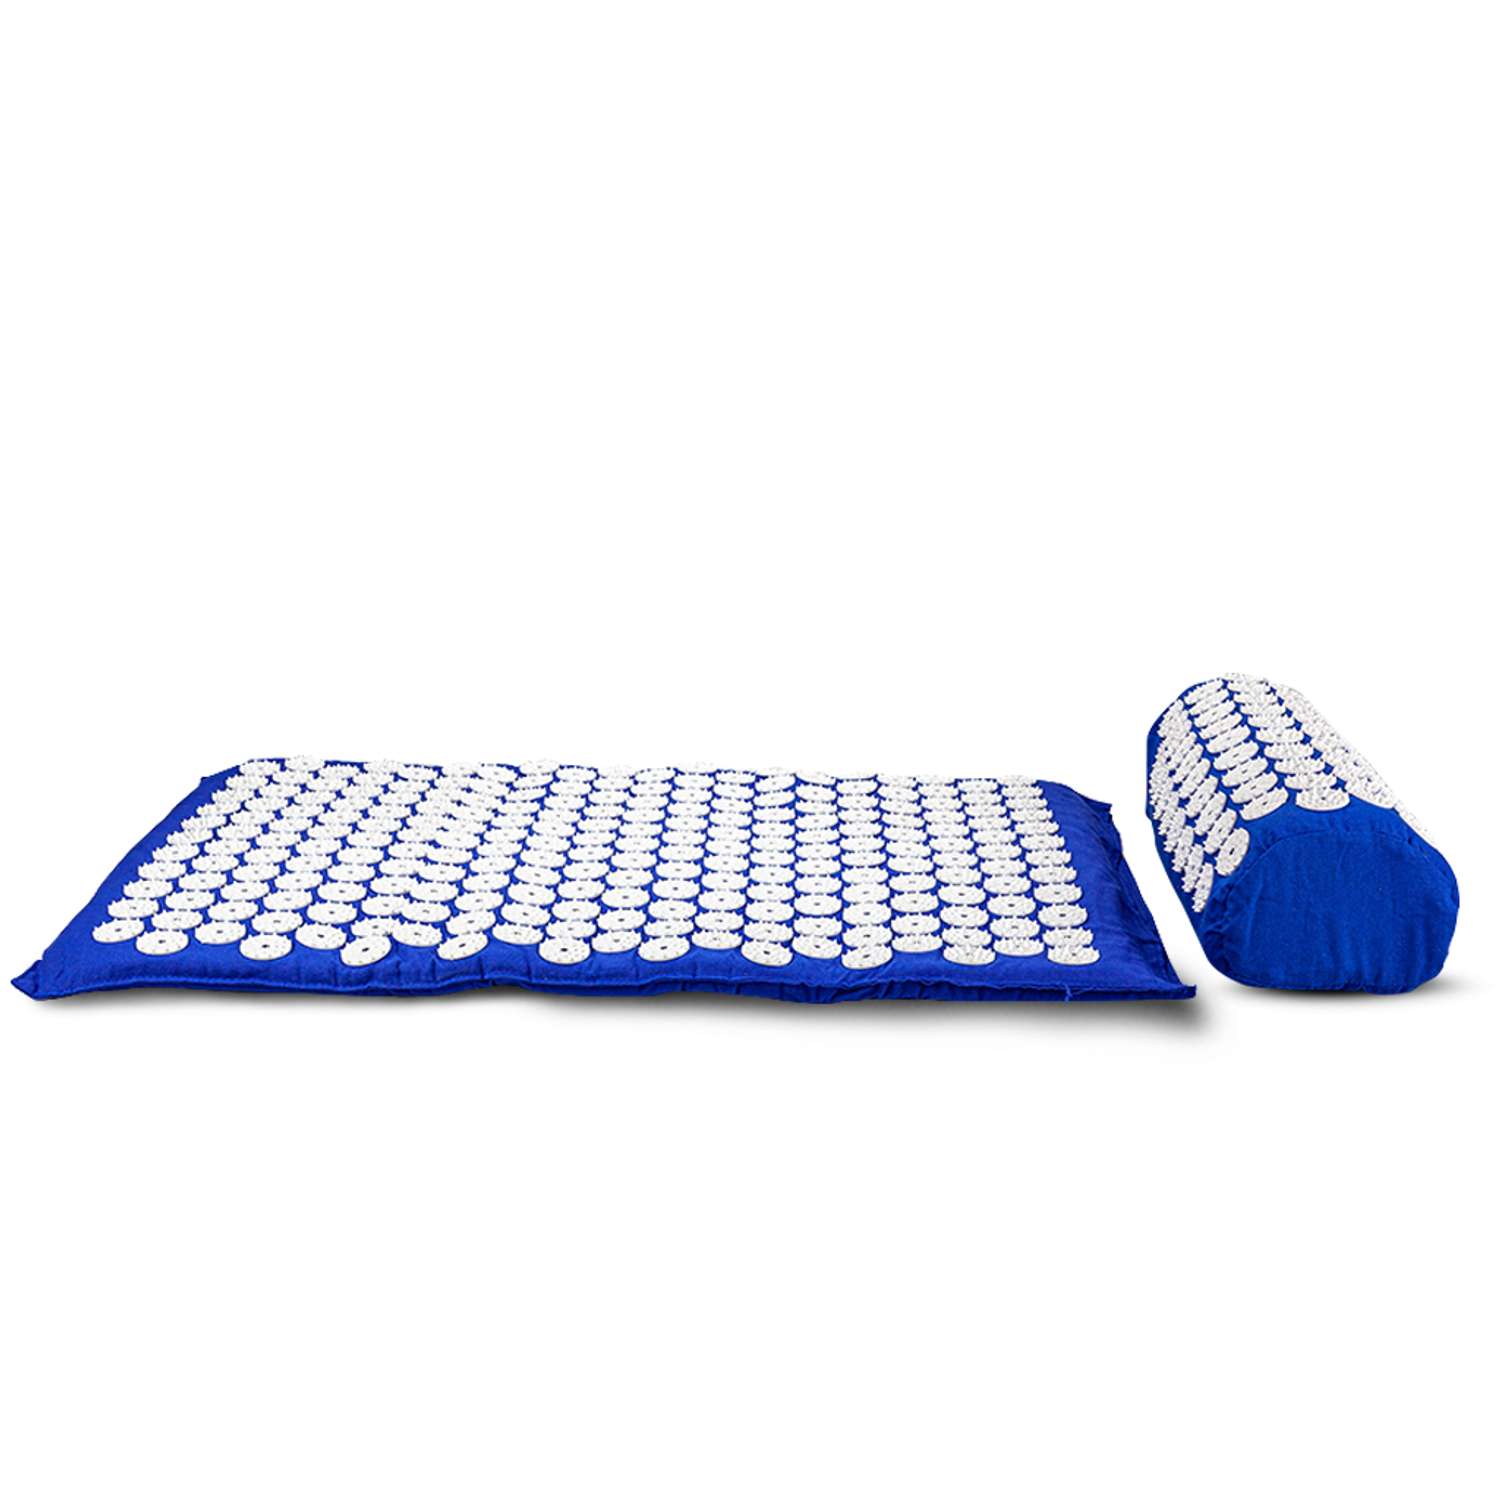 Аппликатор Кузнецова Solmax акупунктурный игольчатый массажный коврик с валиком 68х42 см синий - фото 4